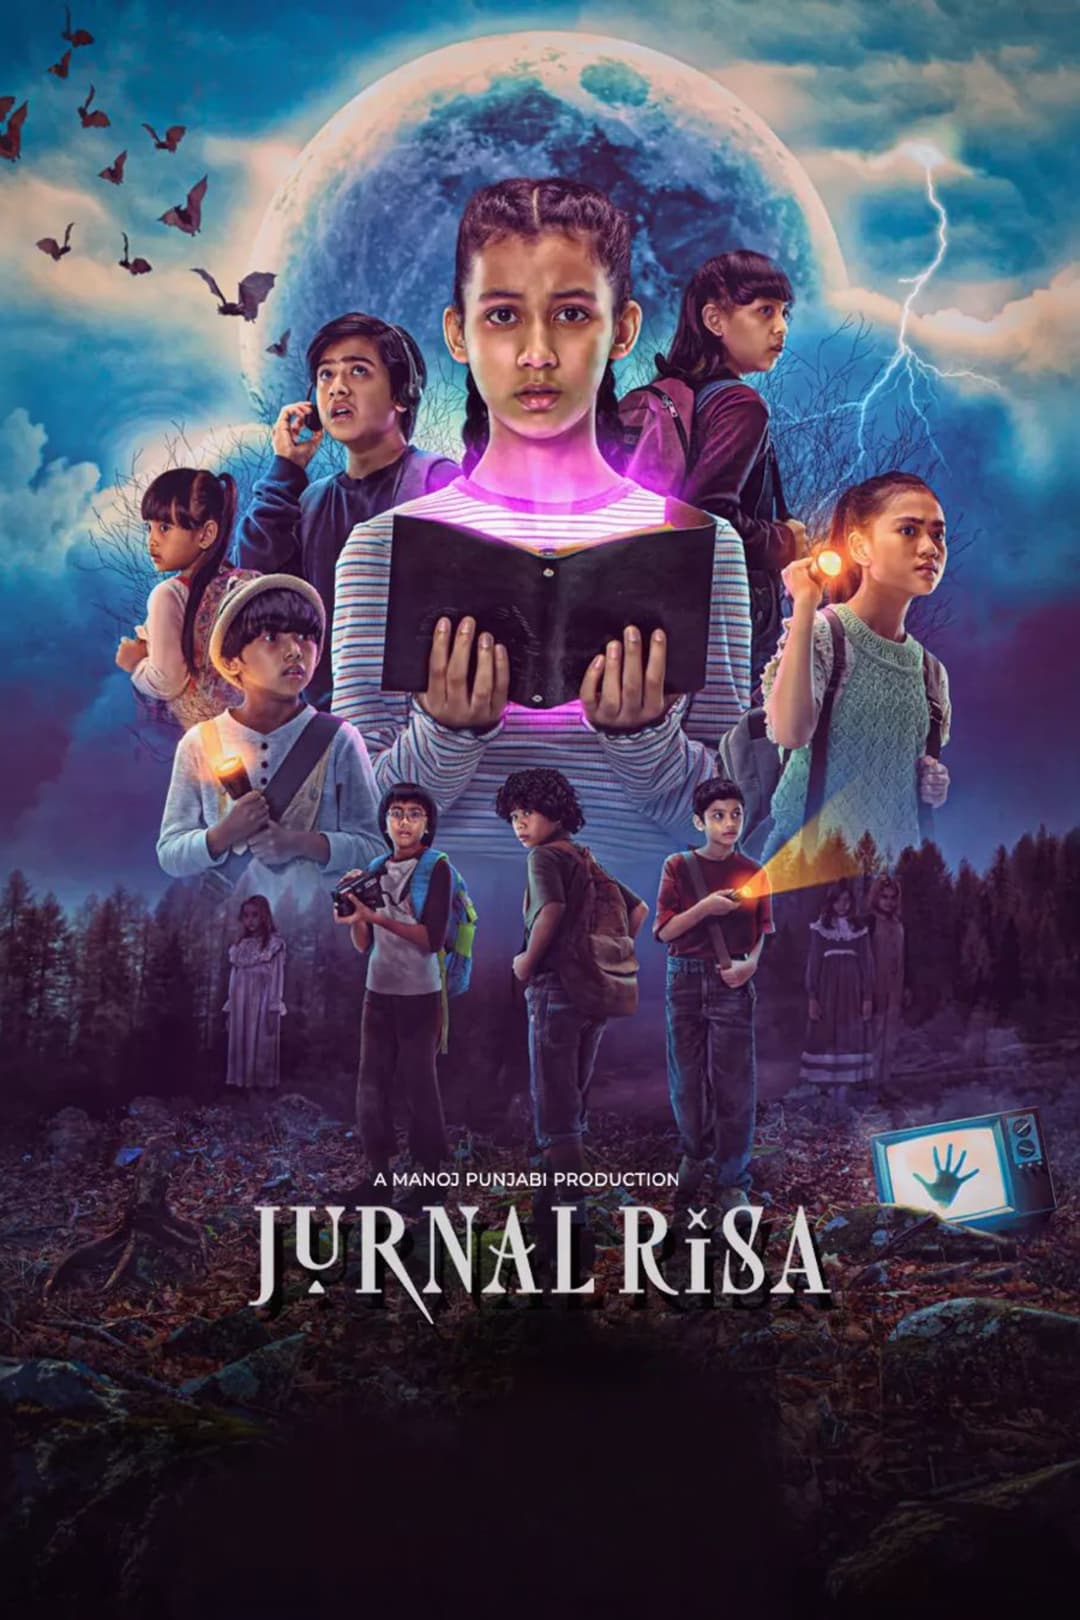 TV ratings for Jurnal Risa in Norway. Disney+ Hotstar TV series